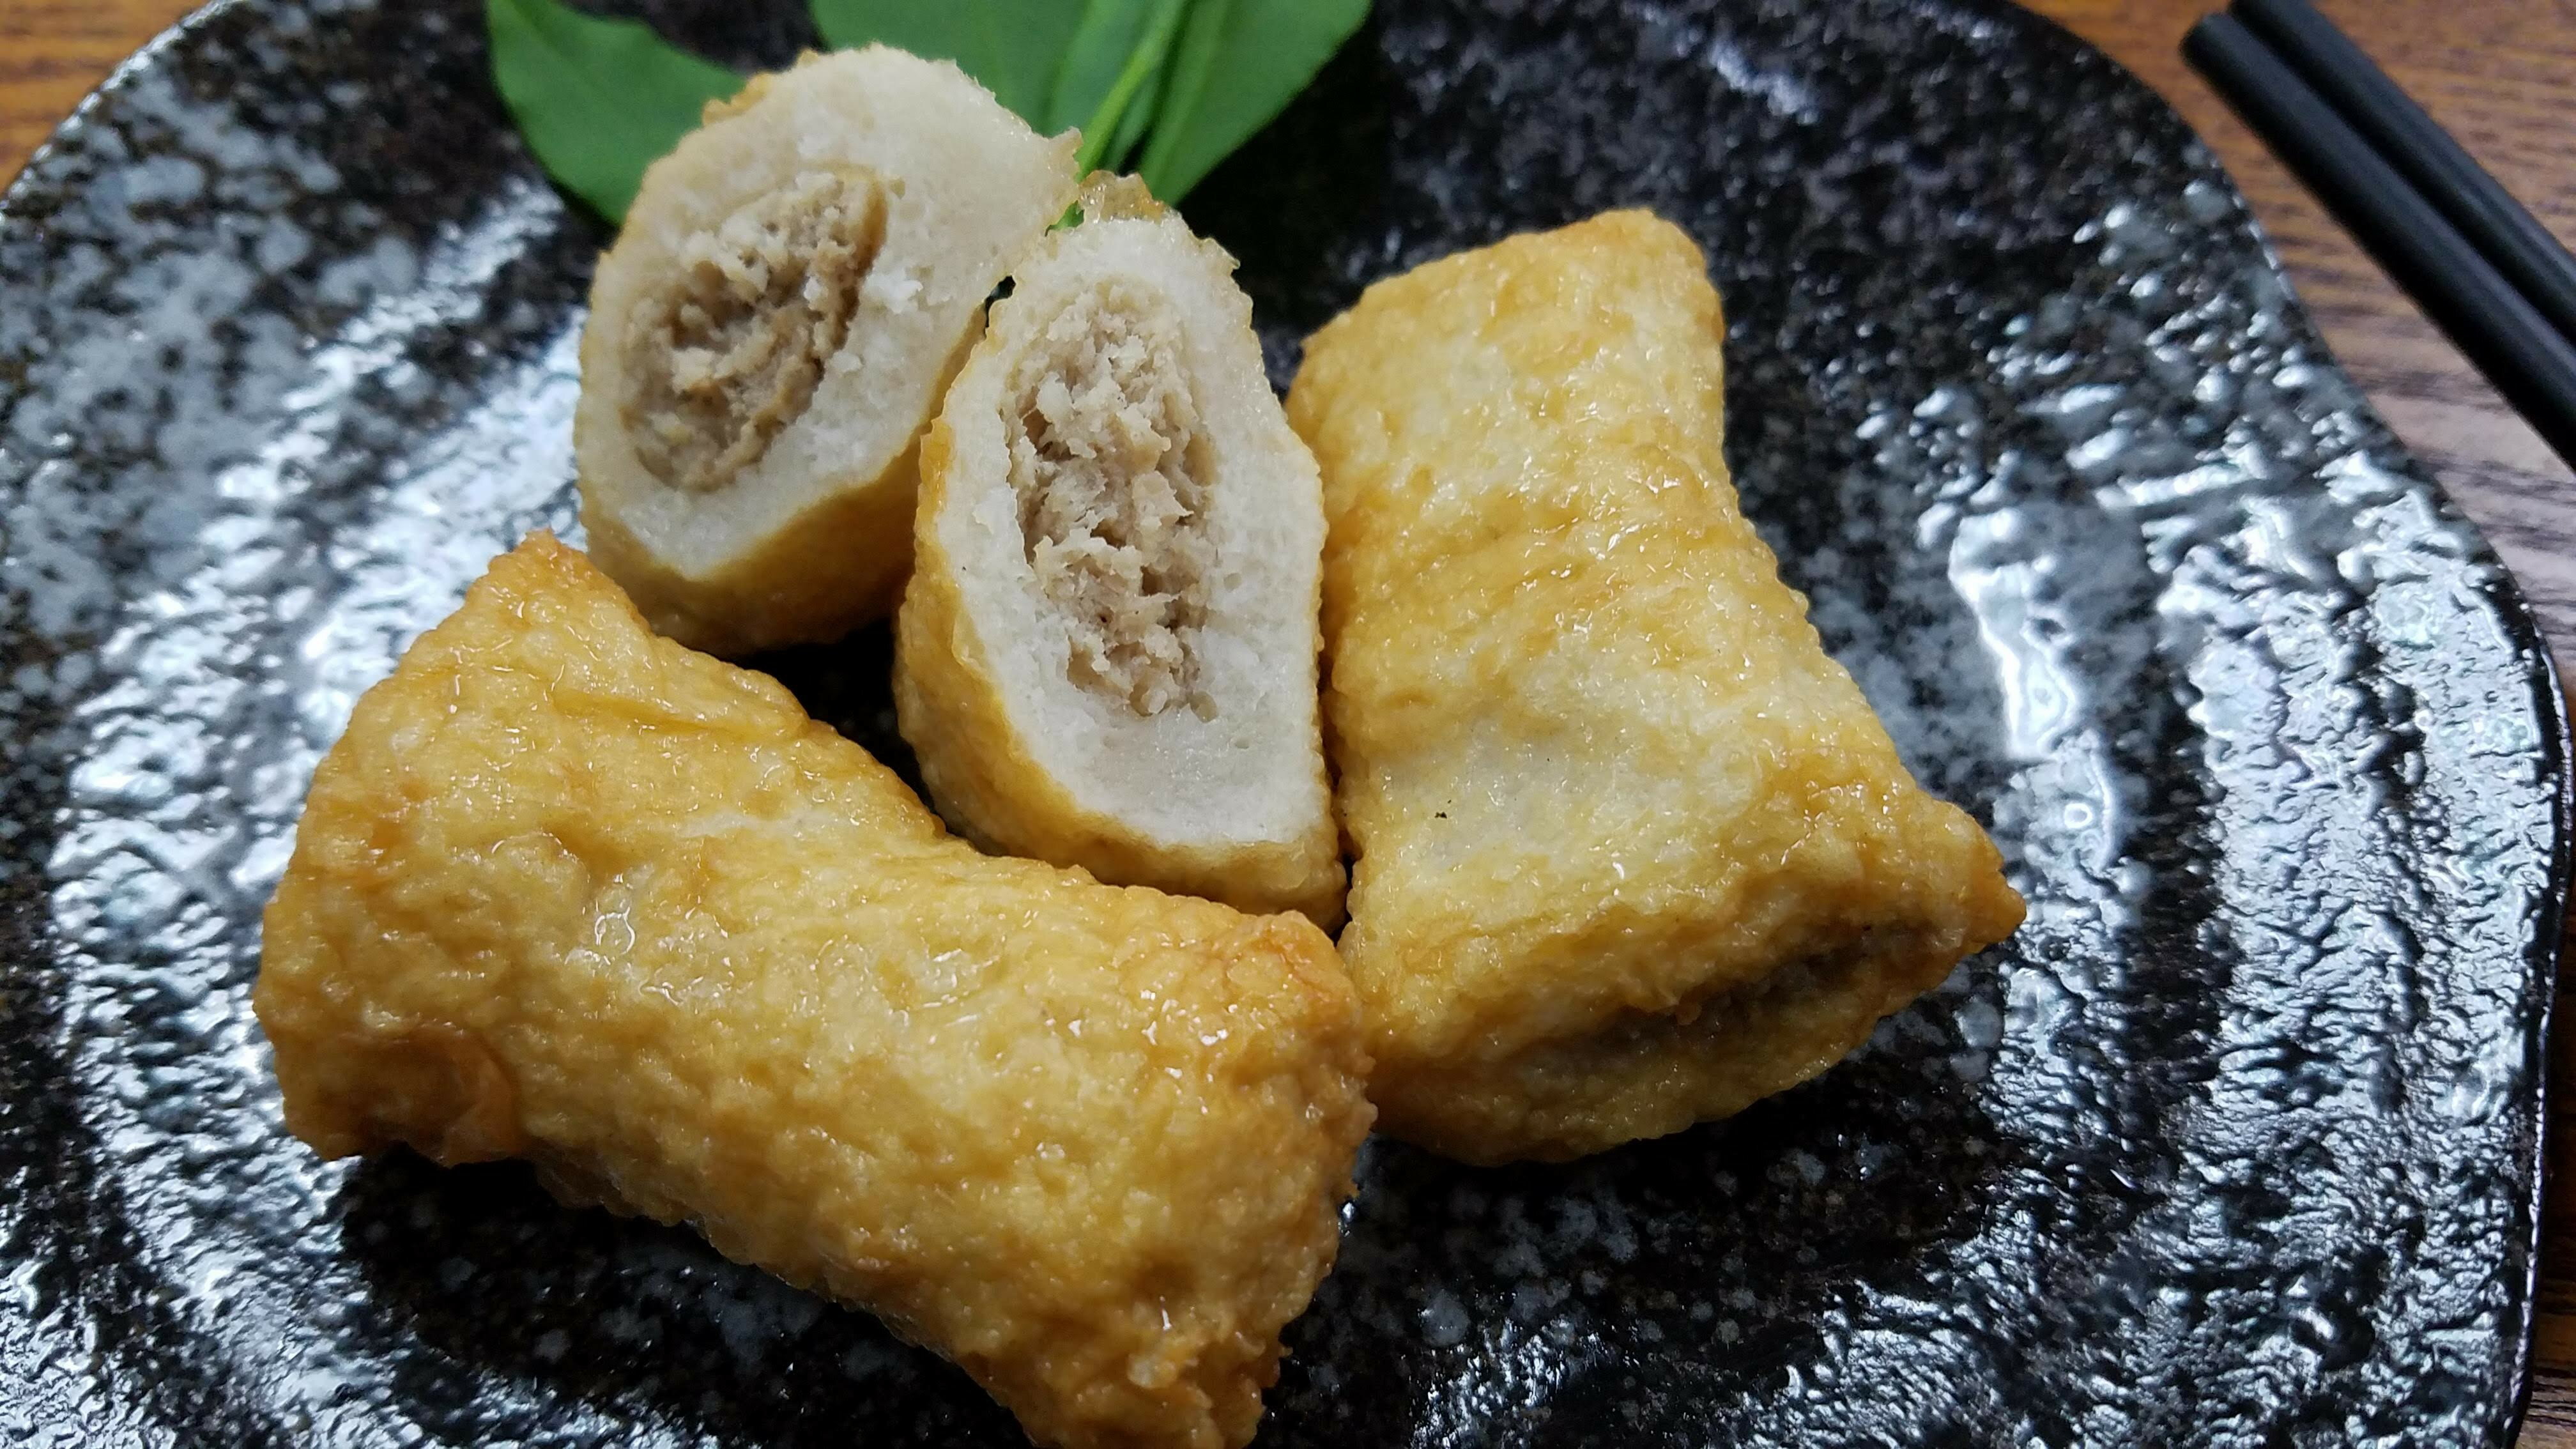 金鯛塊 150g【利津食品行】火鍋料 關東煮 包餡 魚丸 冷凍食品